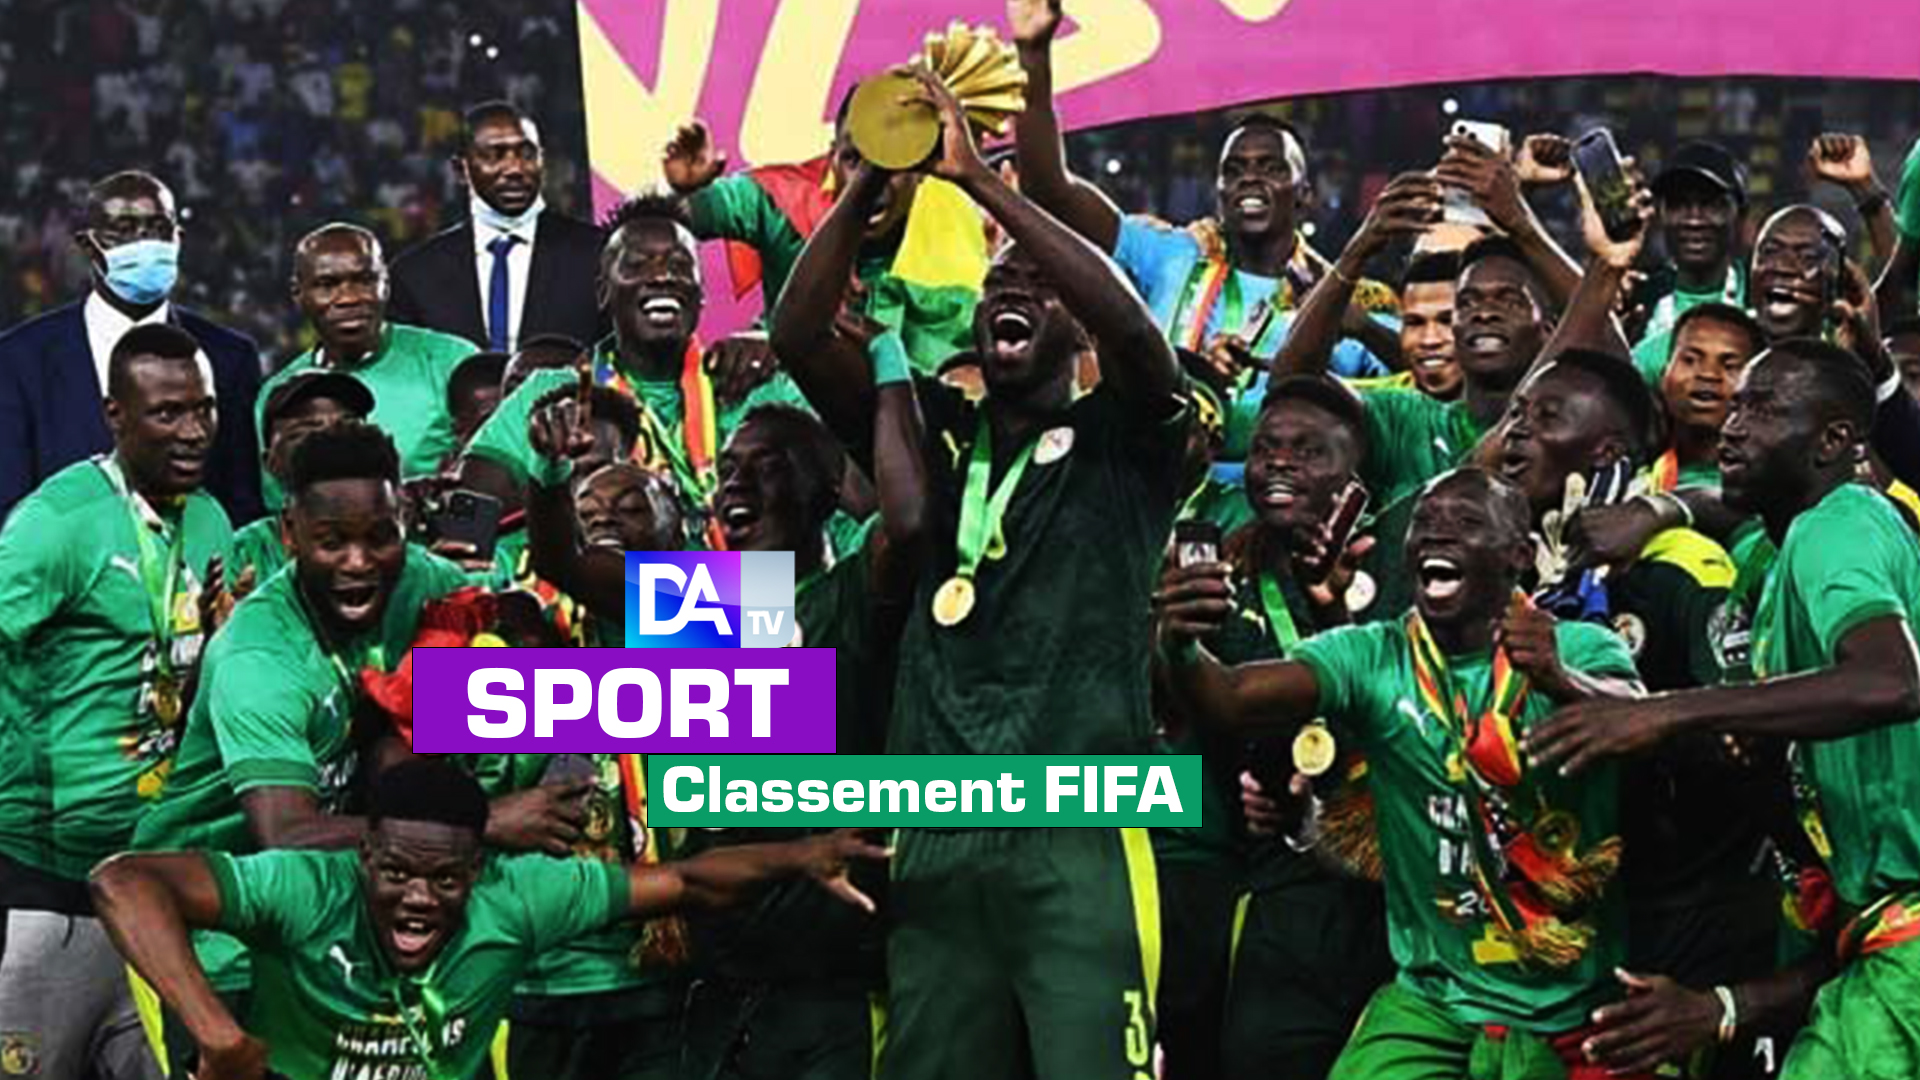 Classement FIFA : Le Sénégal réintègre le top 18, l’Argentine nouveau numéro 1 mondial !